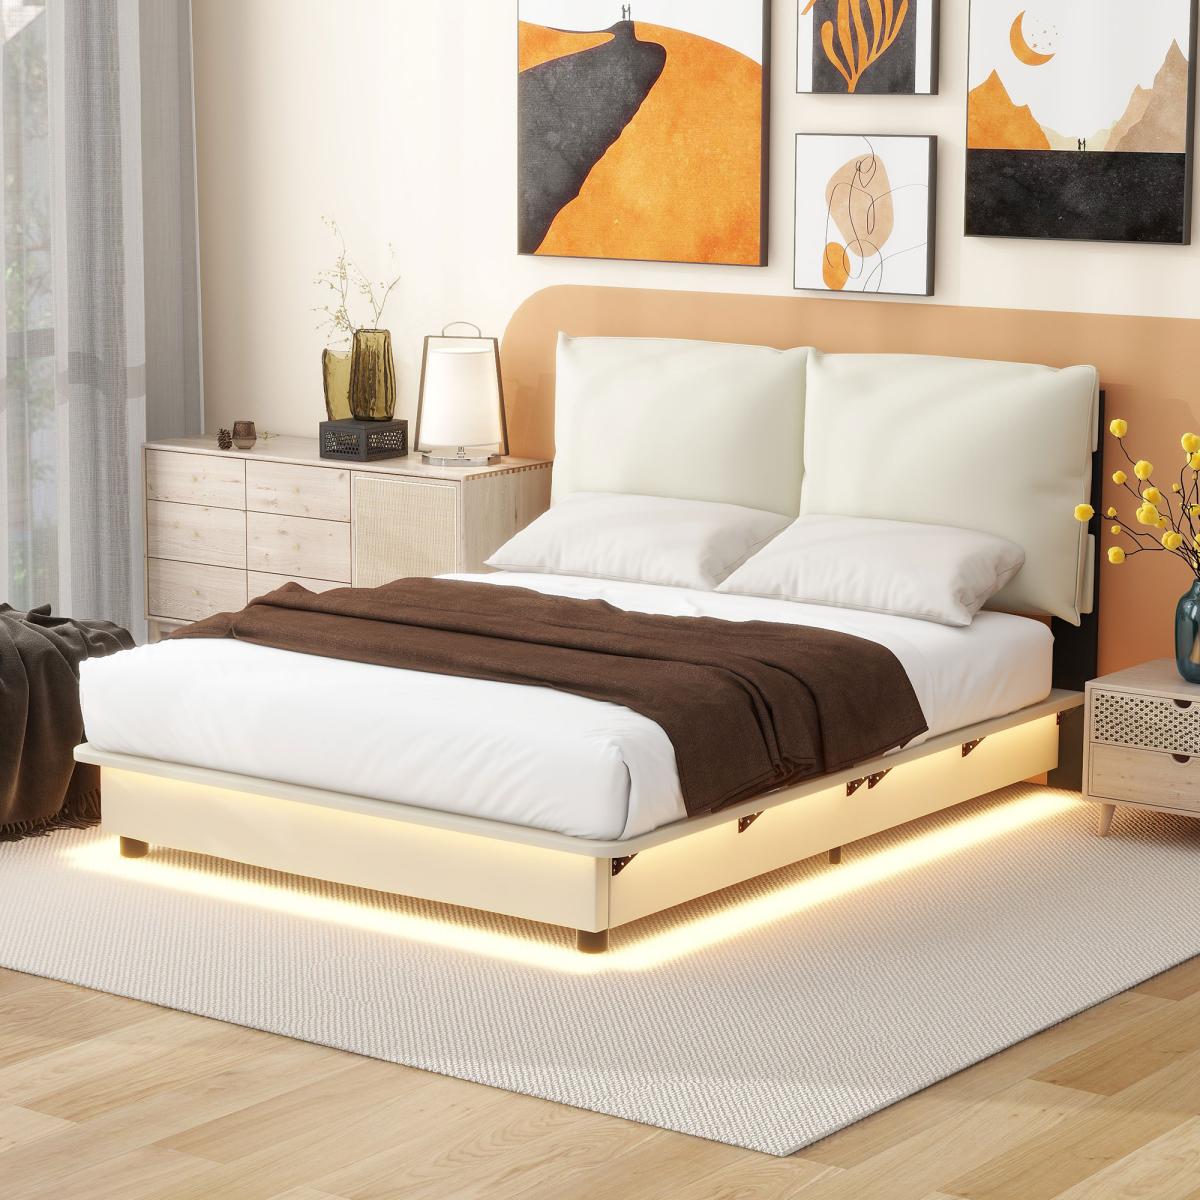 Full Size Upholstered Platform Bed with Sensor Light and Ergonomic Design Backrests, White